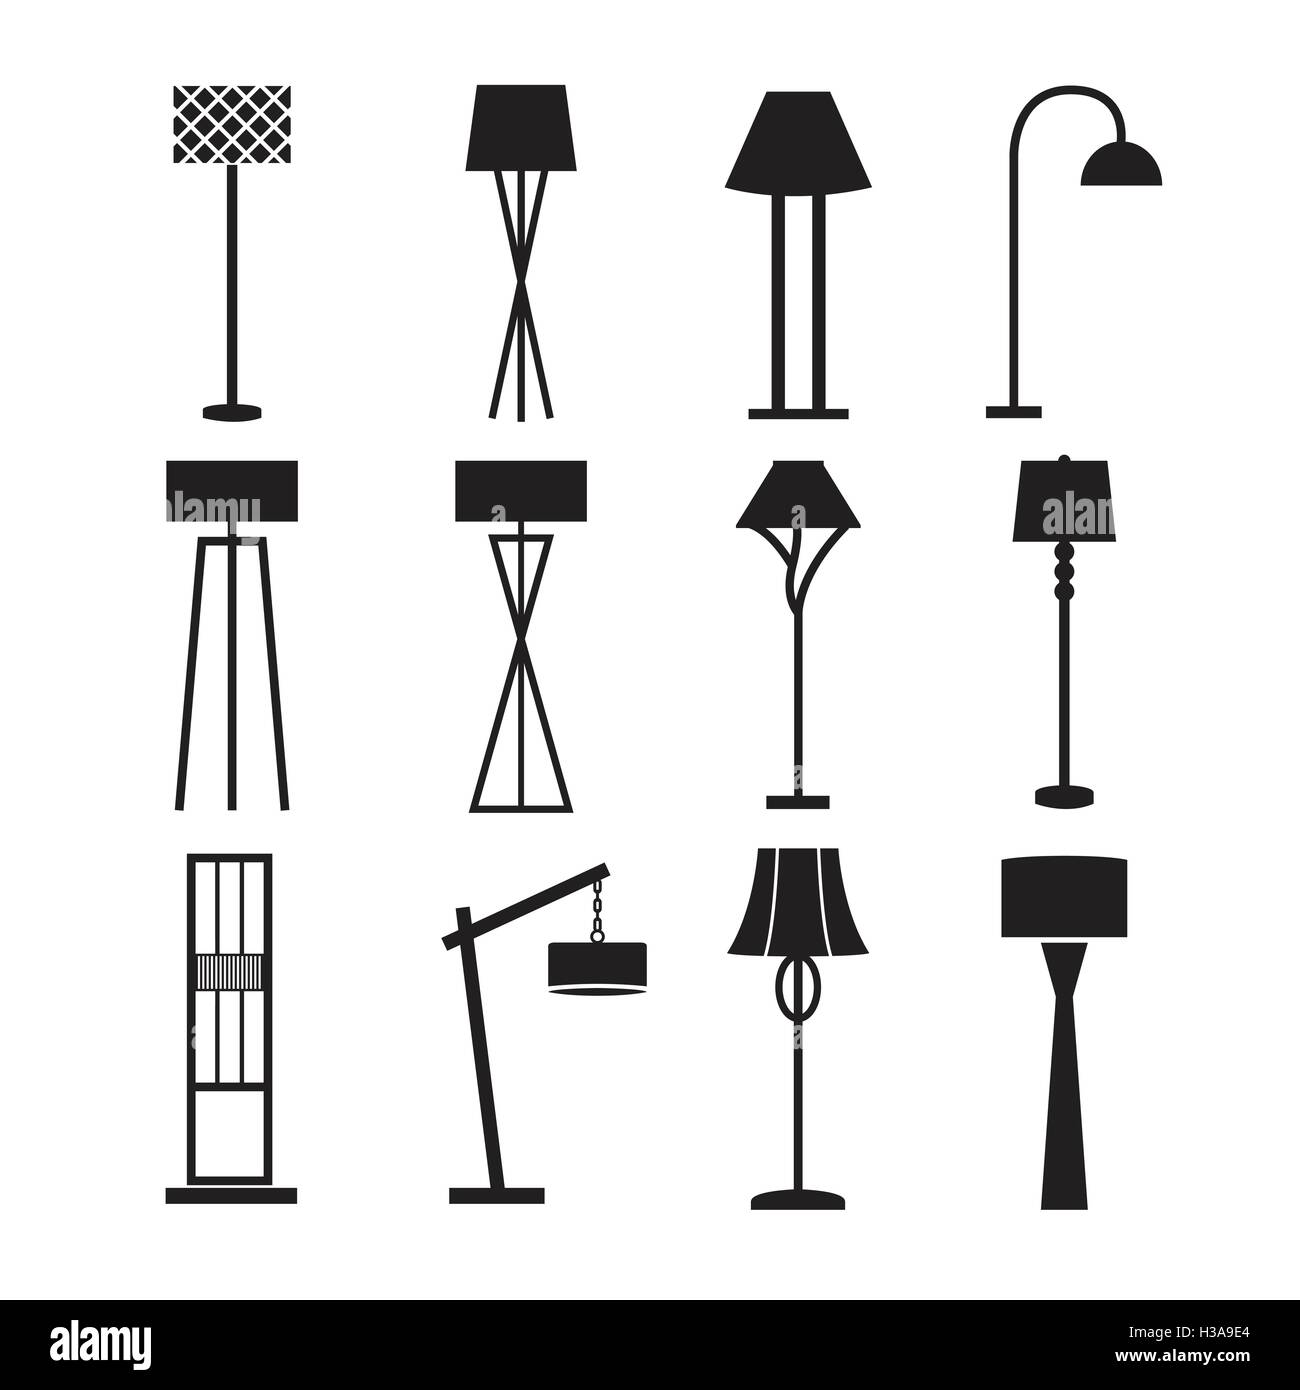 Lampe Vektor, Stehleuchte, Lampe-Icon-Set dekorieren Stock Vektor